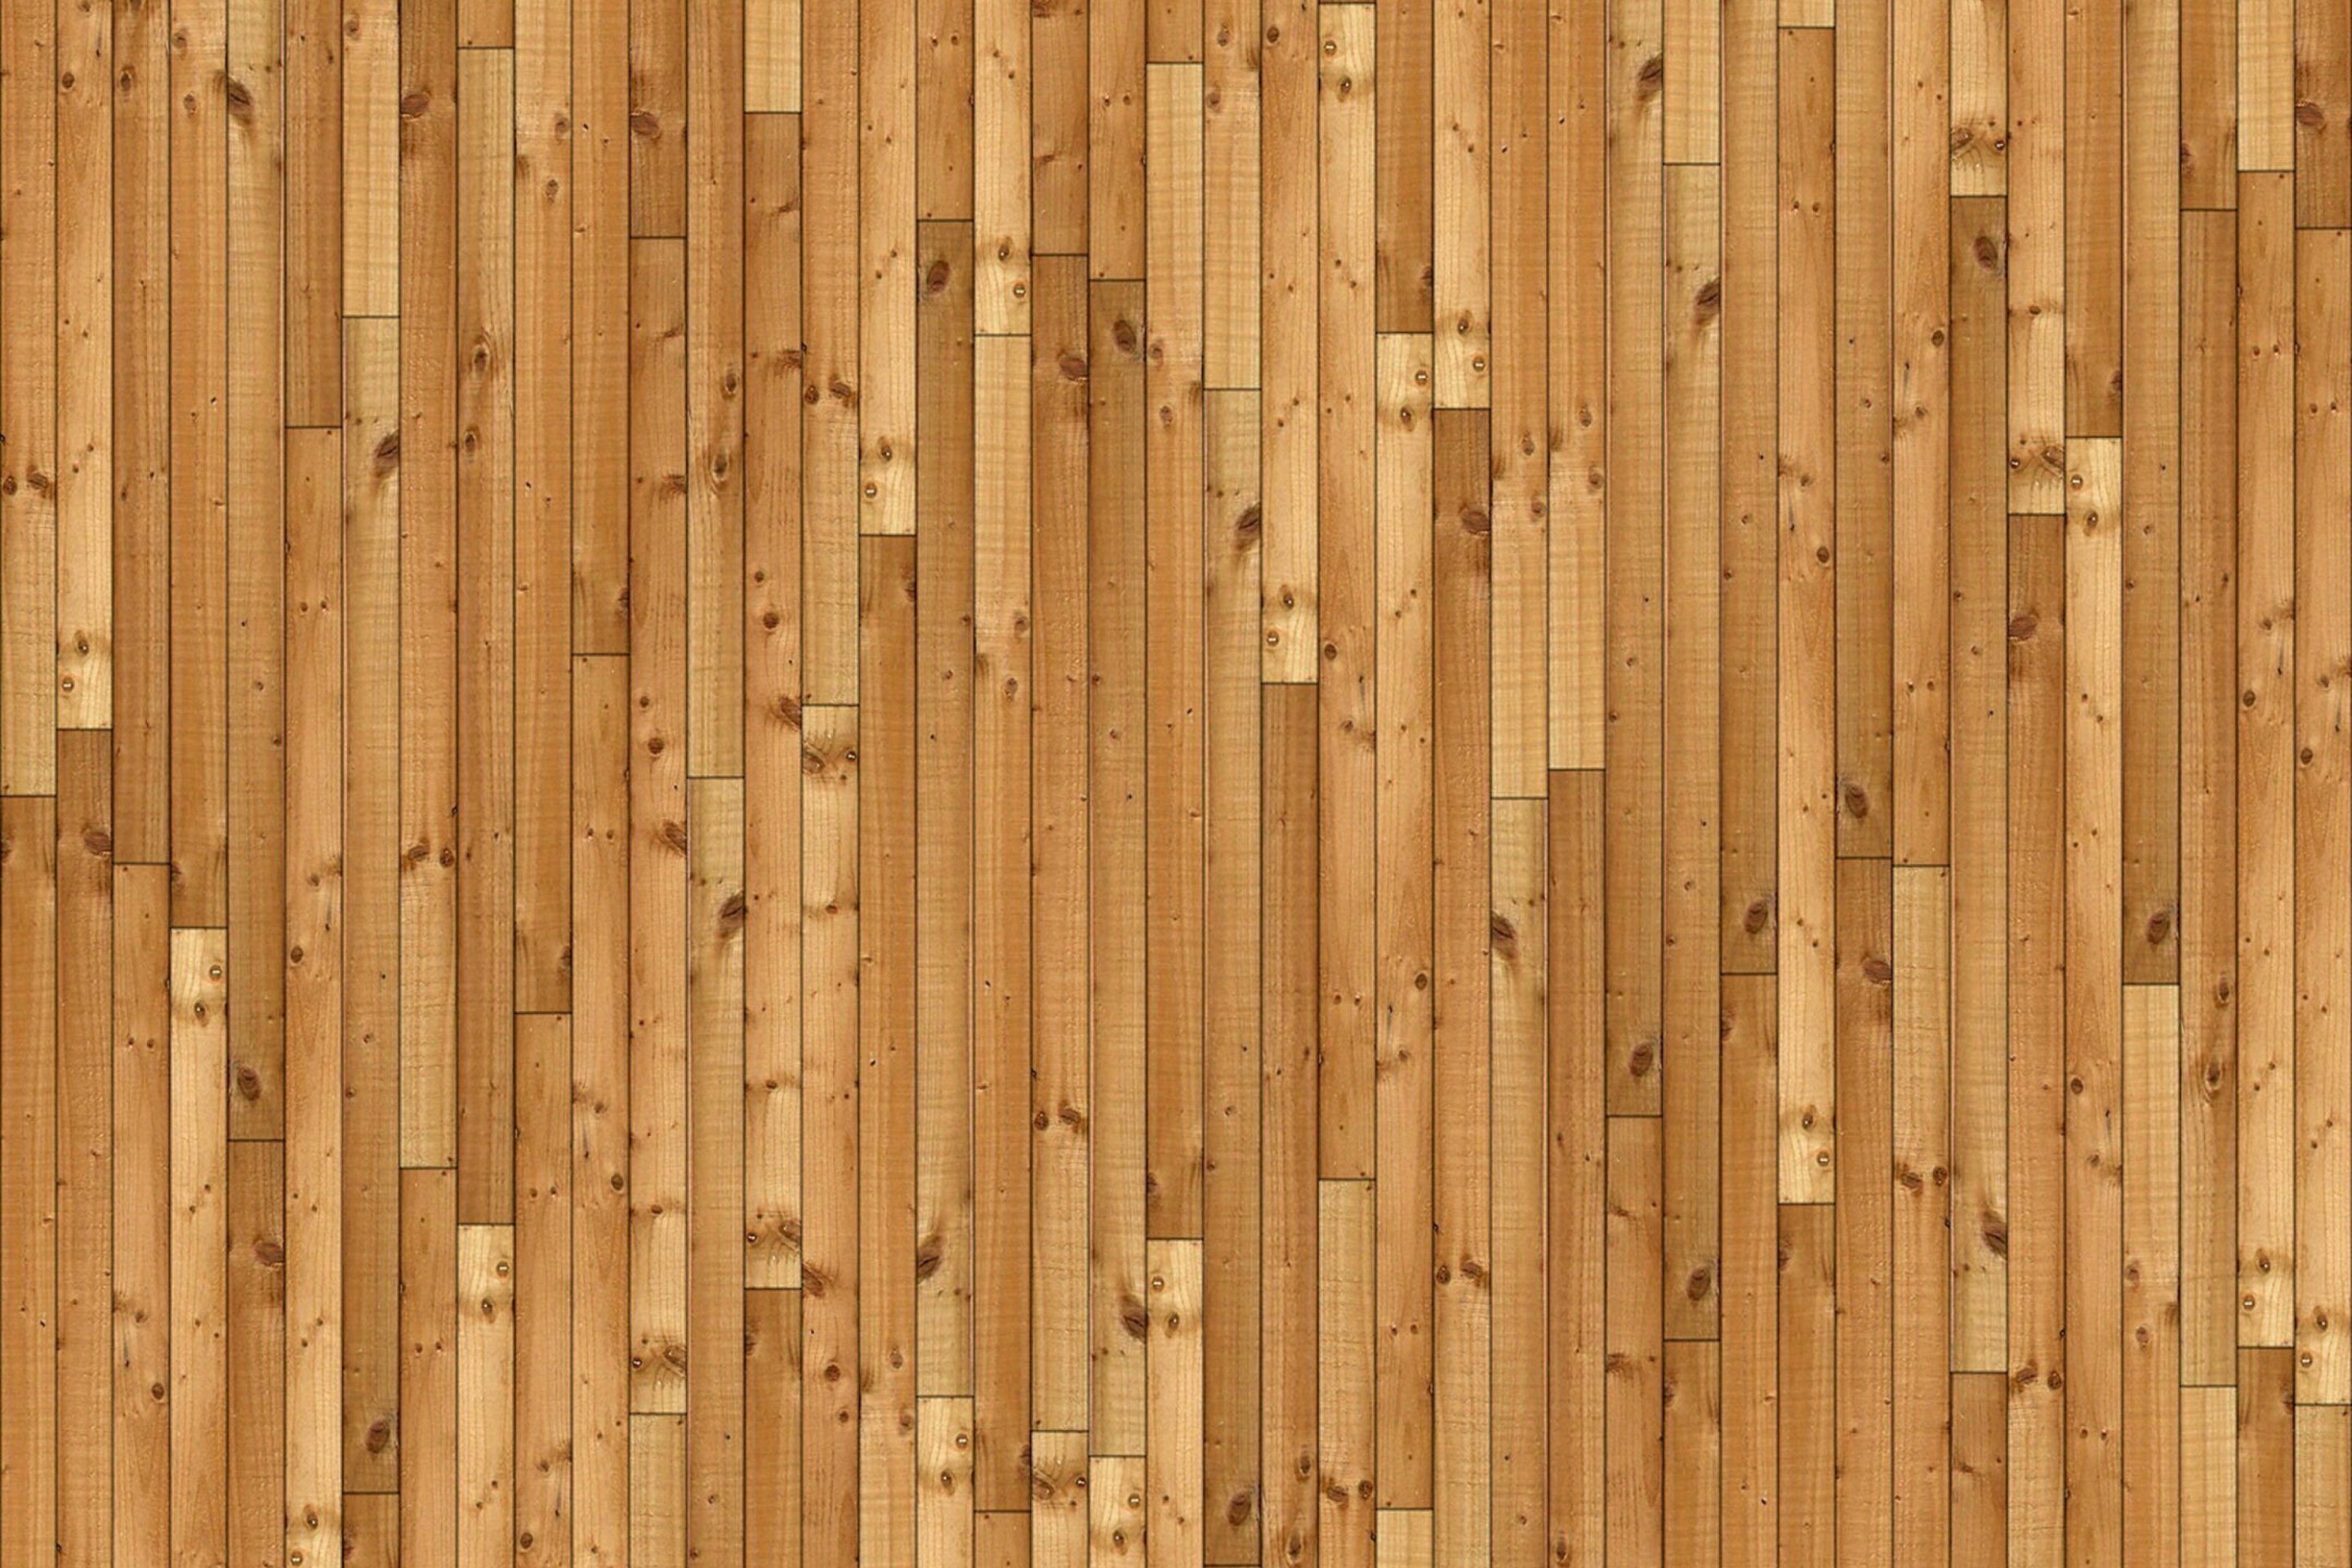 Wooden patterns. Деревянная стена. Деревянная текстура. Фактура дерева. Деревянный фон.